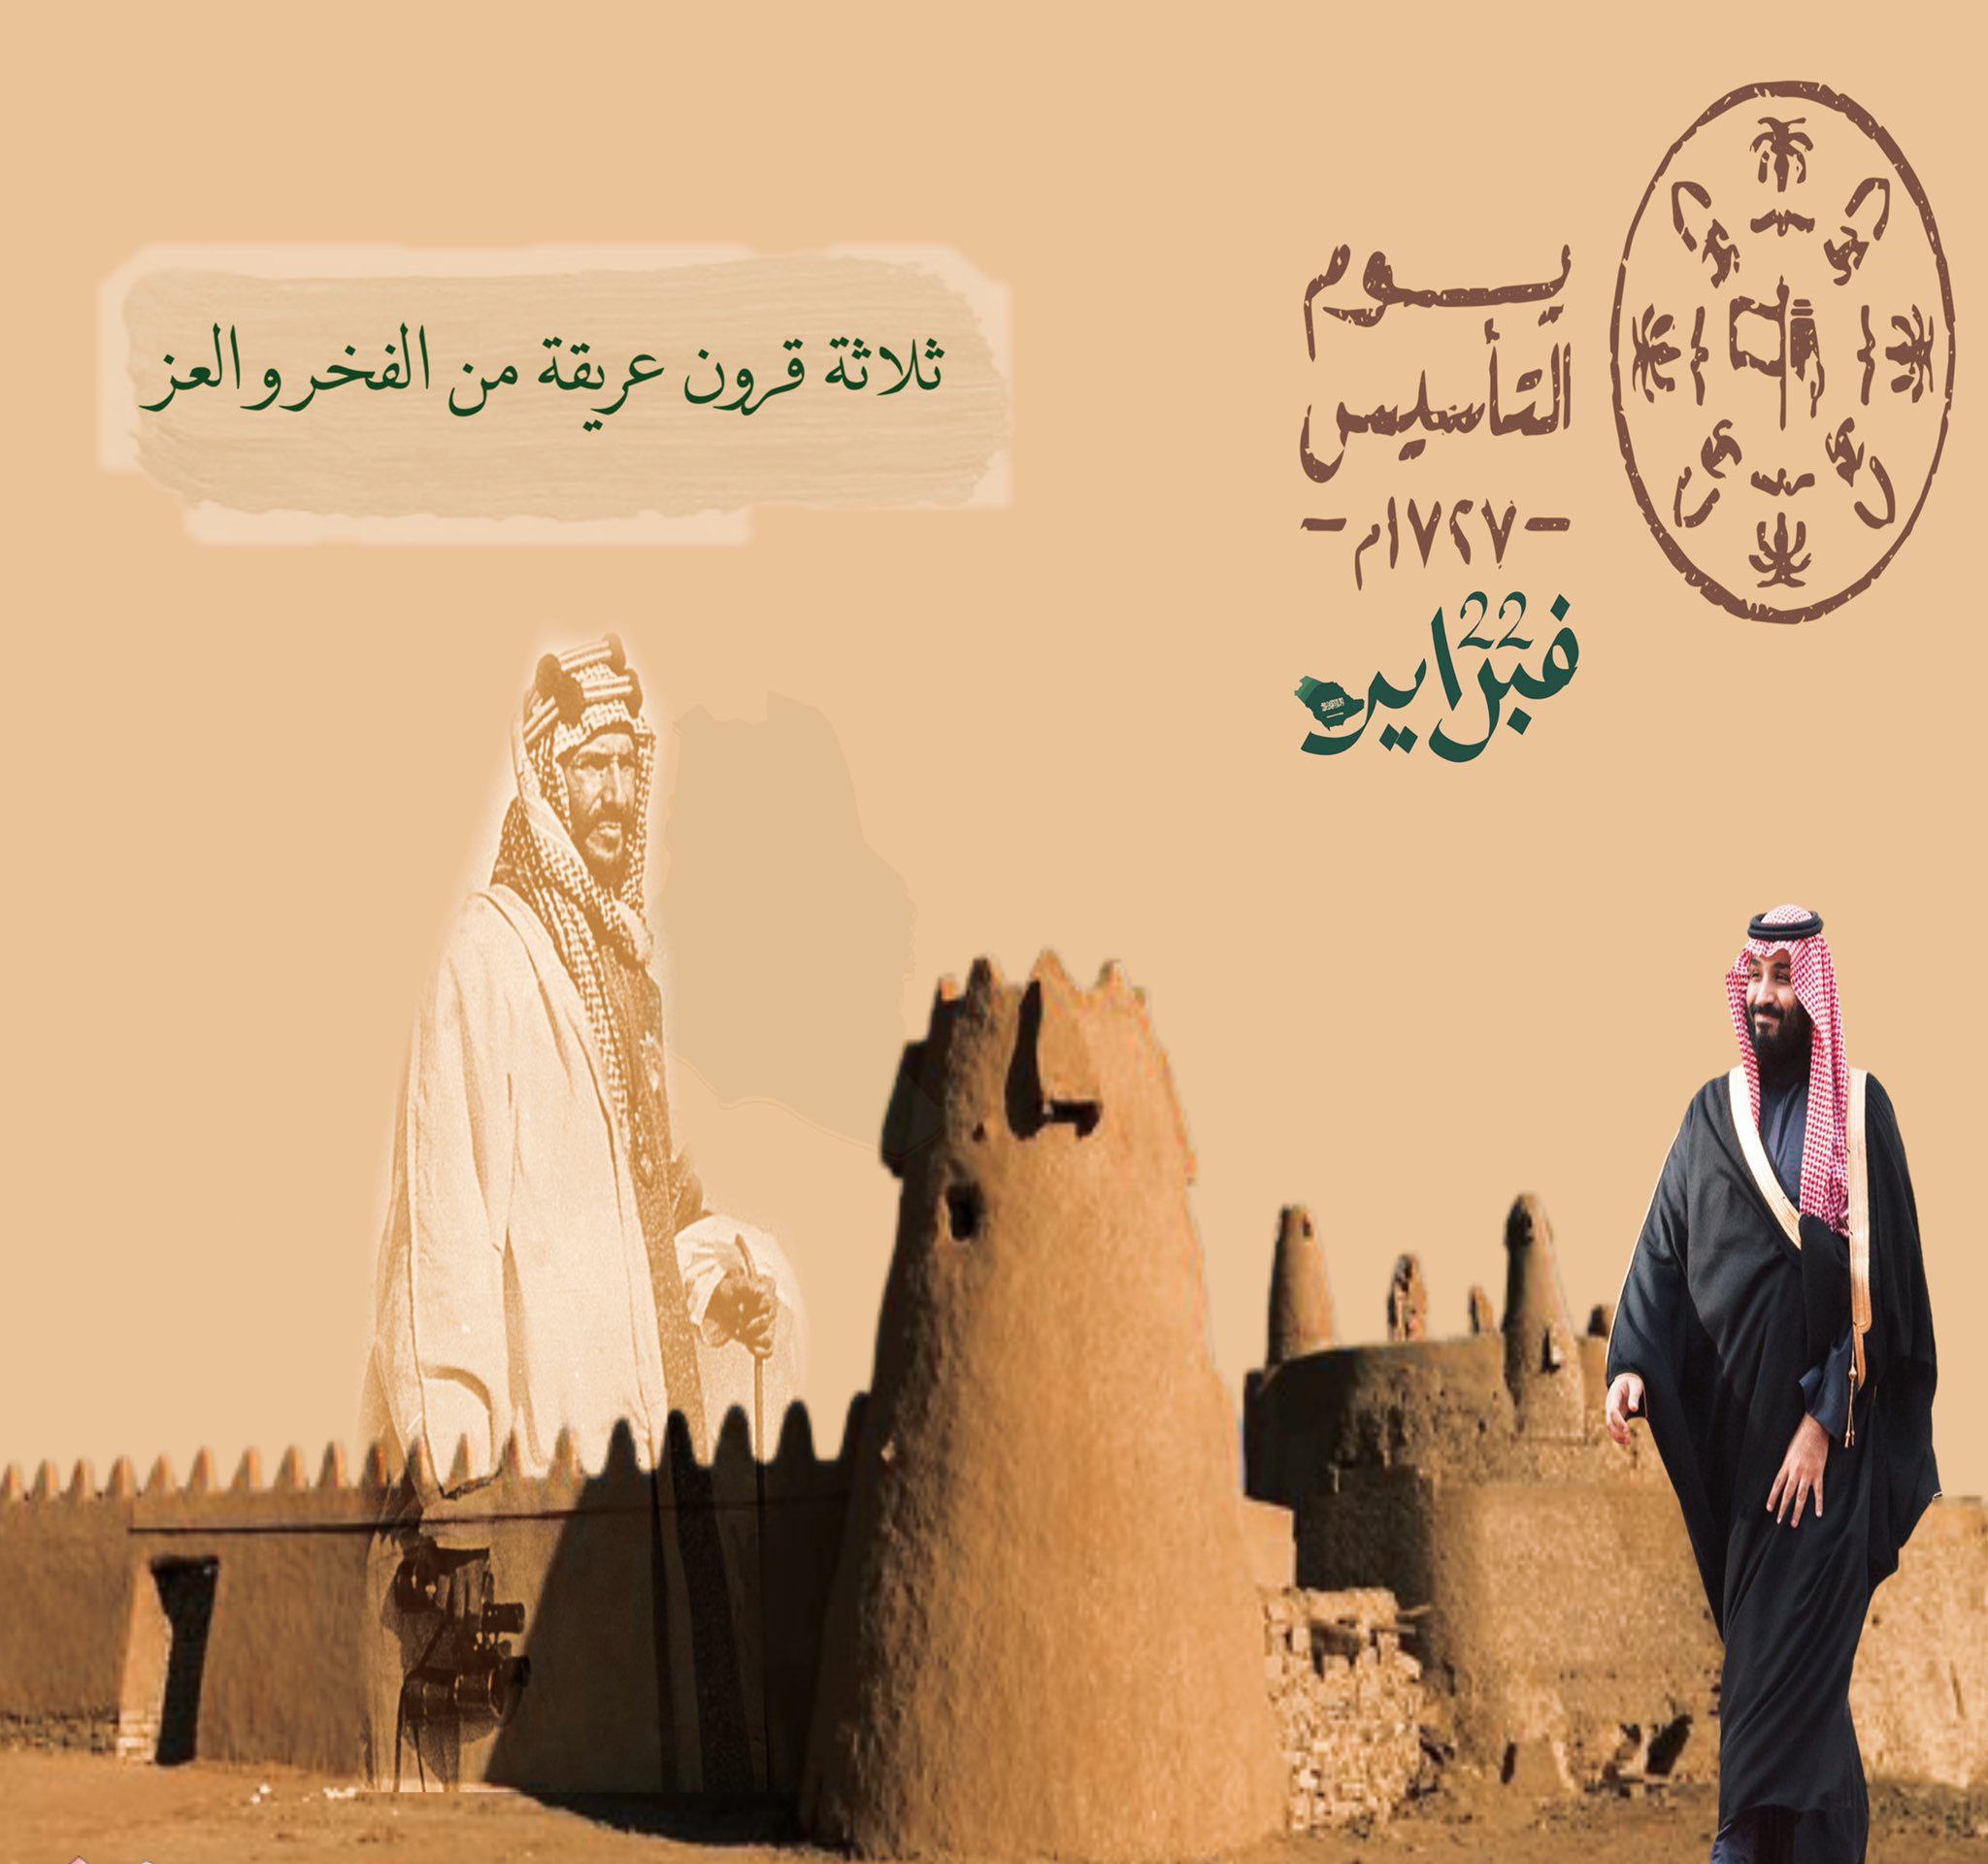 اجمل عبارات عن يوم التأسيس السعودي 1444 - 2023 | خدمات الخليج